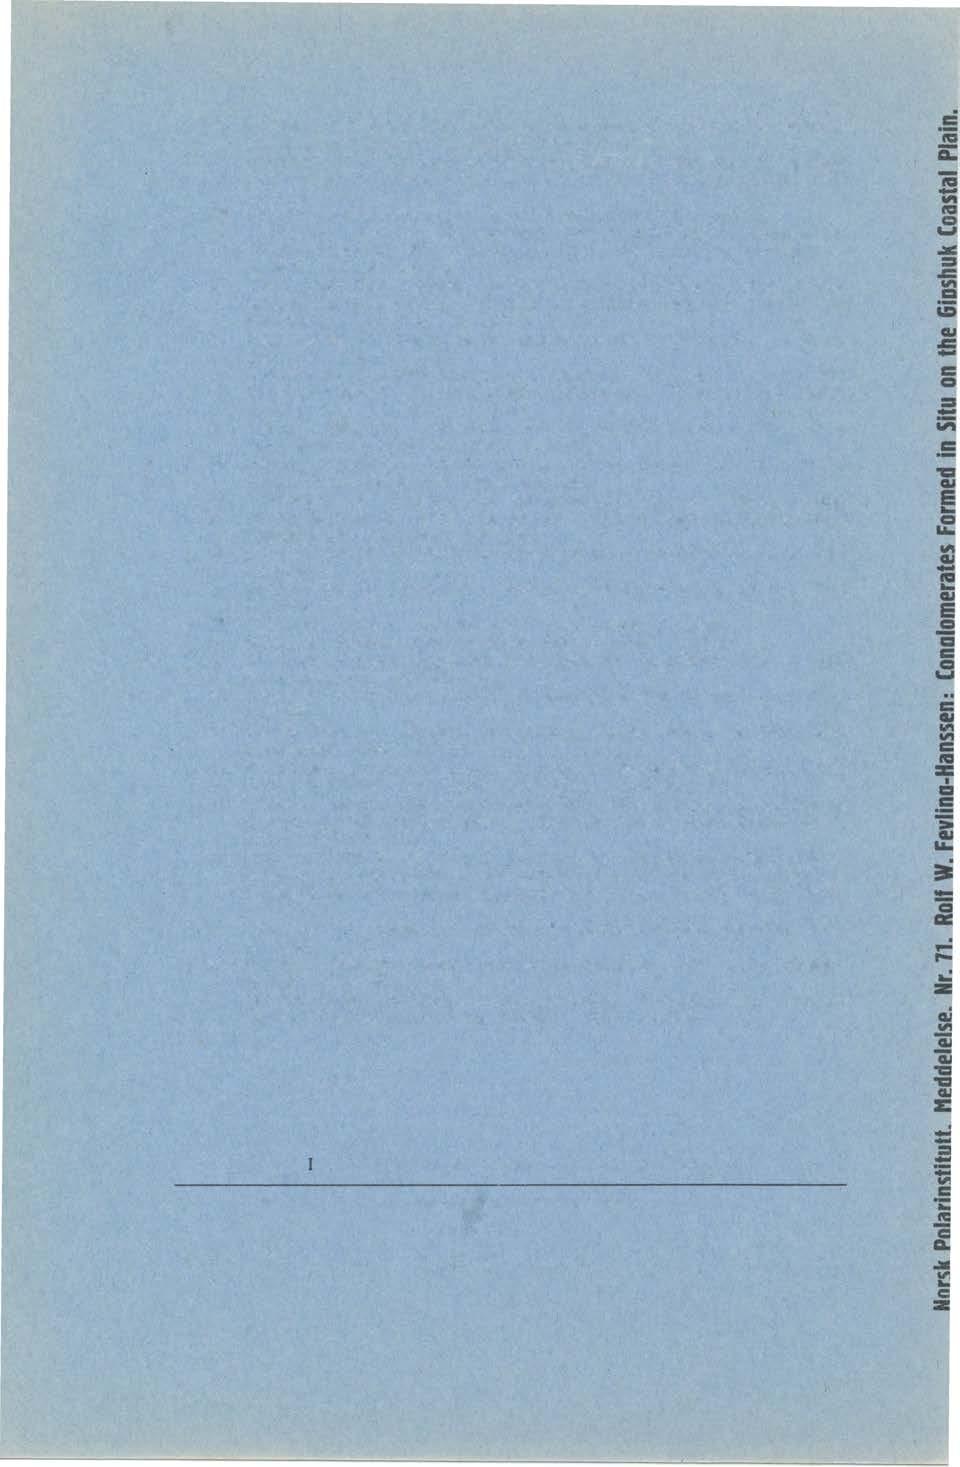 Nr. 46. ORVIN, ÅNDERS K., The Settlements and Huts of Svalbard. - Særtr. av Norsk Geogr. Tidsskr., b. 7, h. 5-8. 1939. Kr. 1,00. " 47.